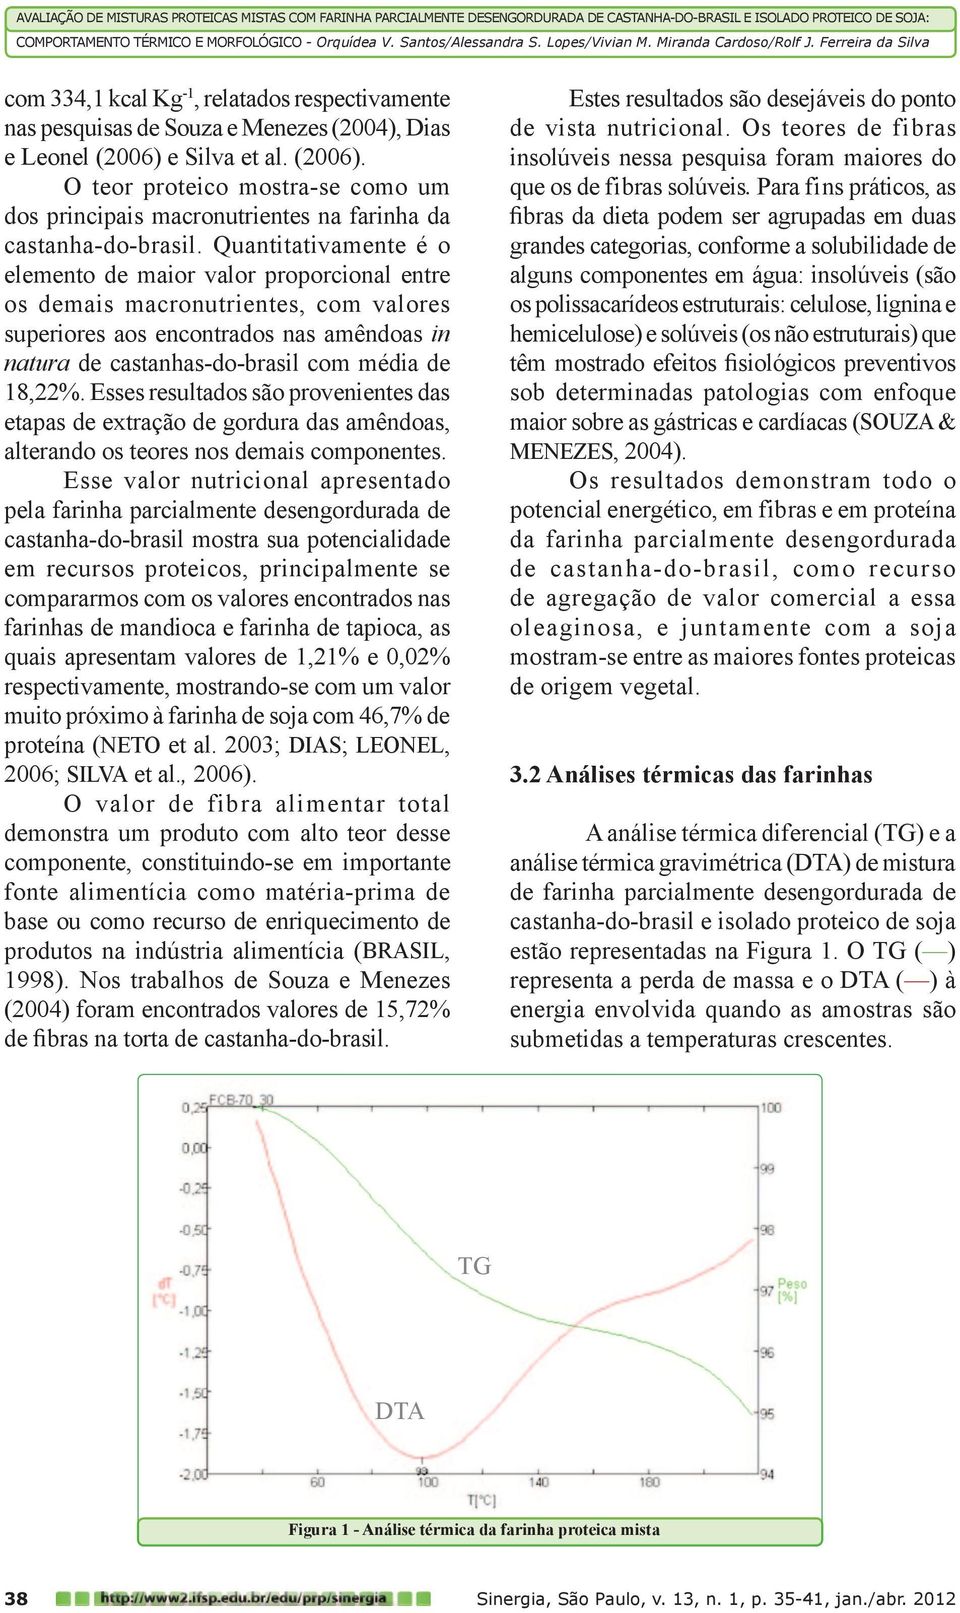 Quantitativamente é o elemento de maior valor proporcional entre os demais macronutrientes, com valores superiores aos encontrados nas amêndoas in natura de castanhas-do-brasil com média de 18,22%.